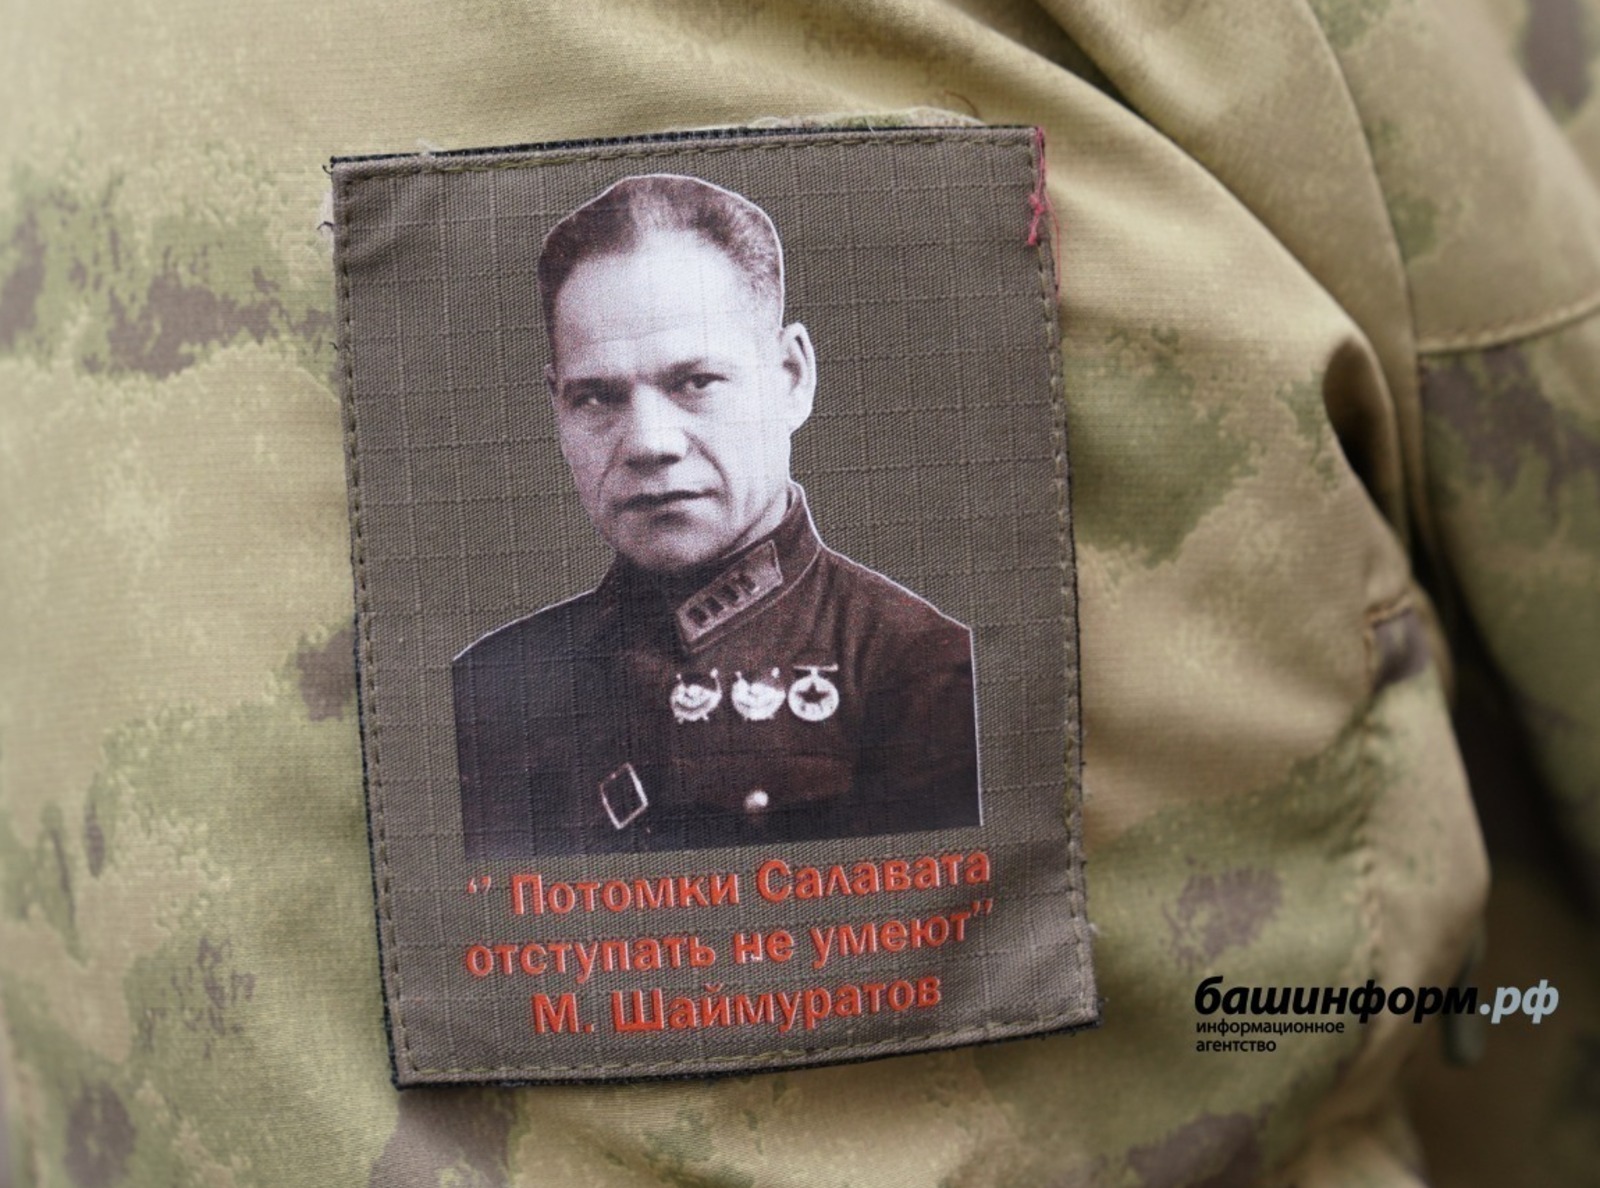 Эксперты рассказал, почему песня «Шаймуратов-генерал» стала эмблемой воинов Башкирии в зоне СВО